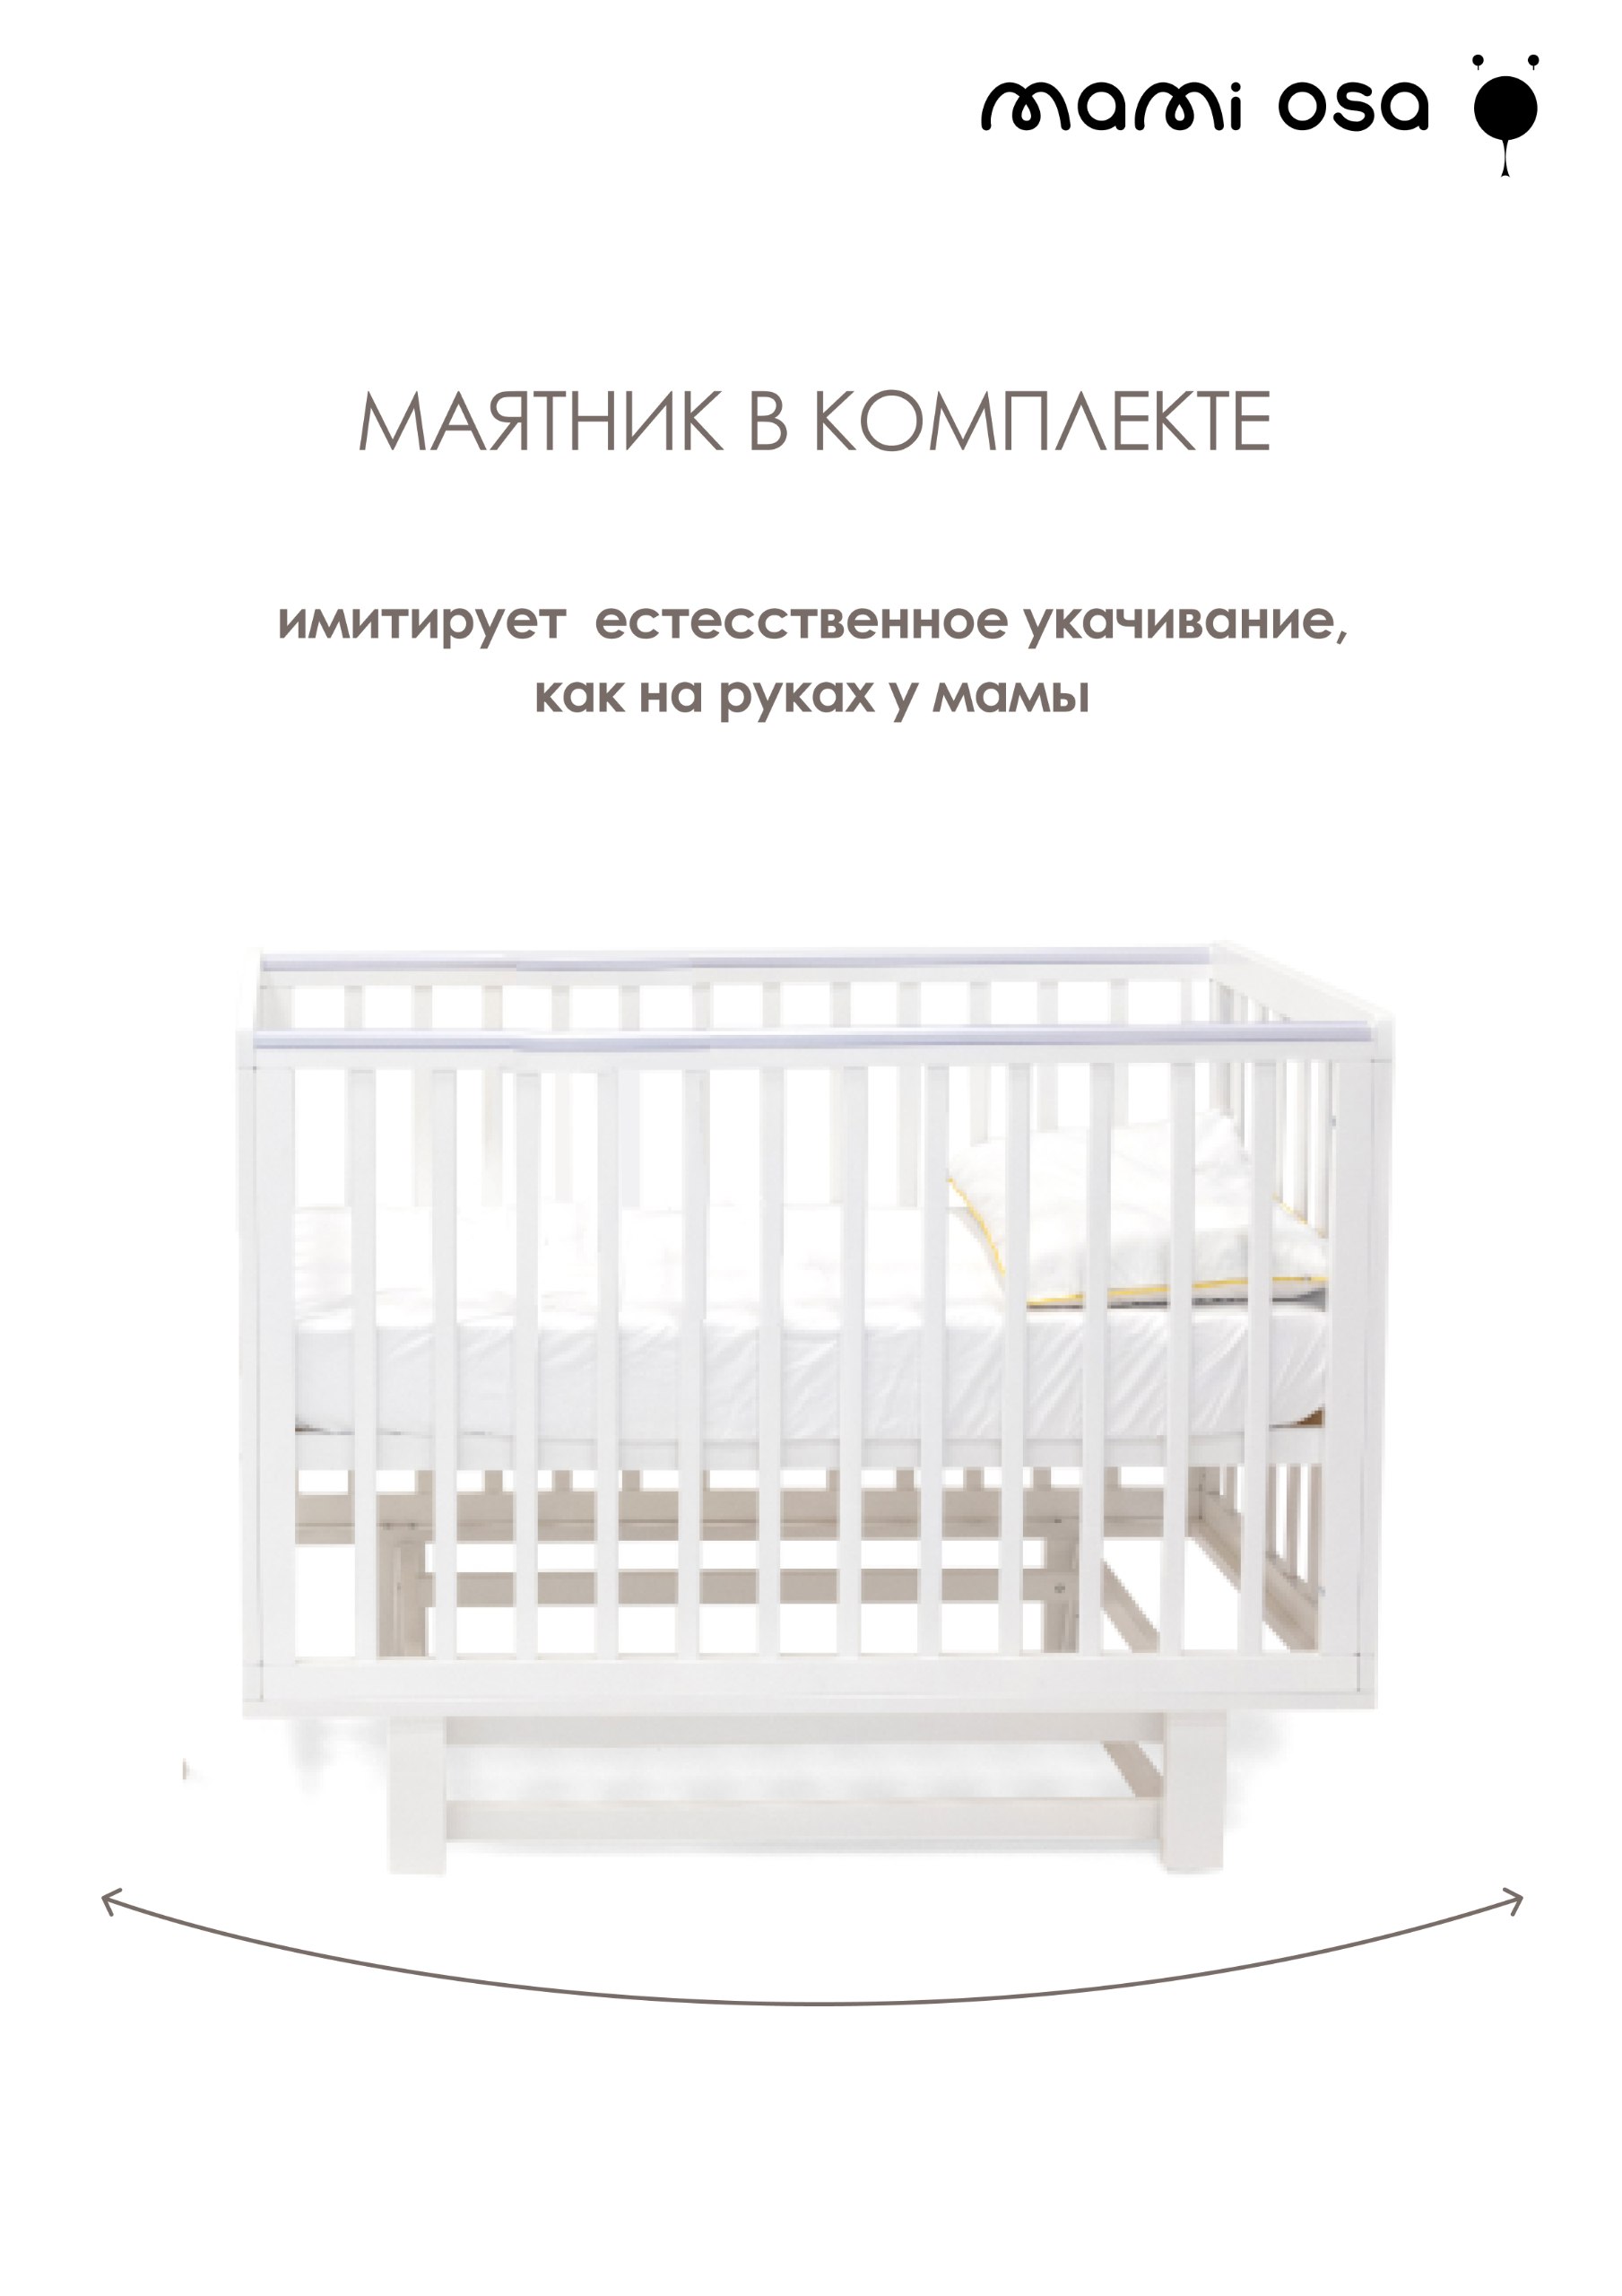 Детская кроватка Mamiosa CUNA BONITA, универсальный маятник (белый) - фото 6